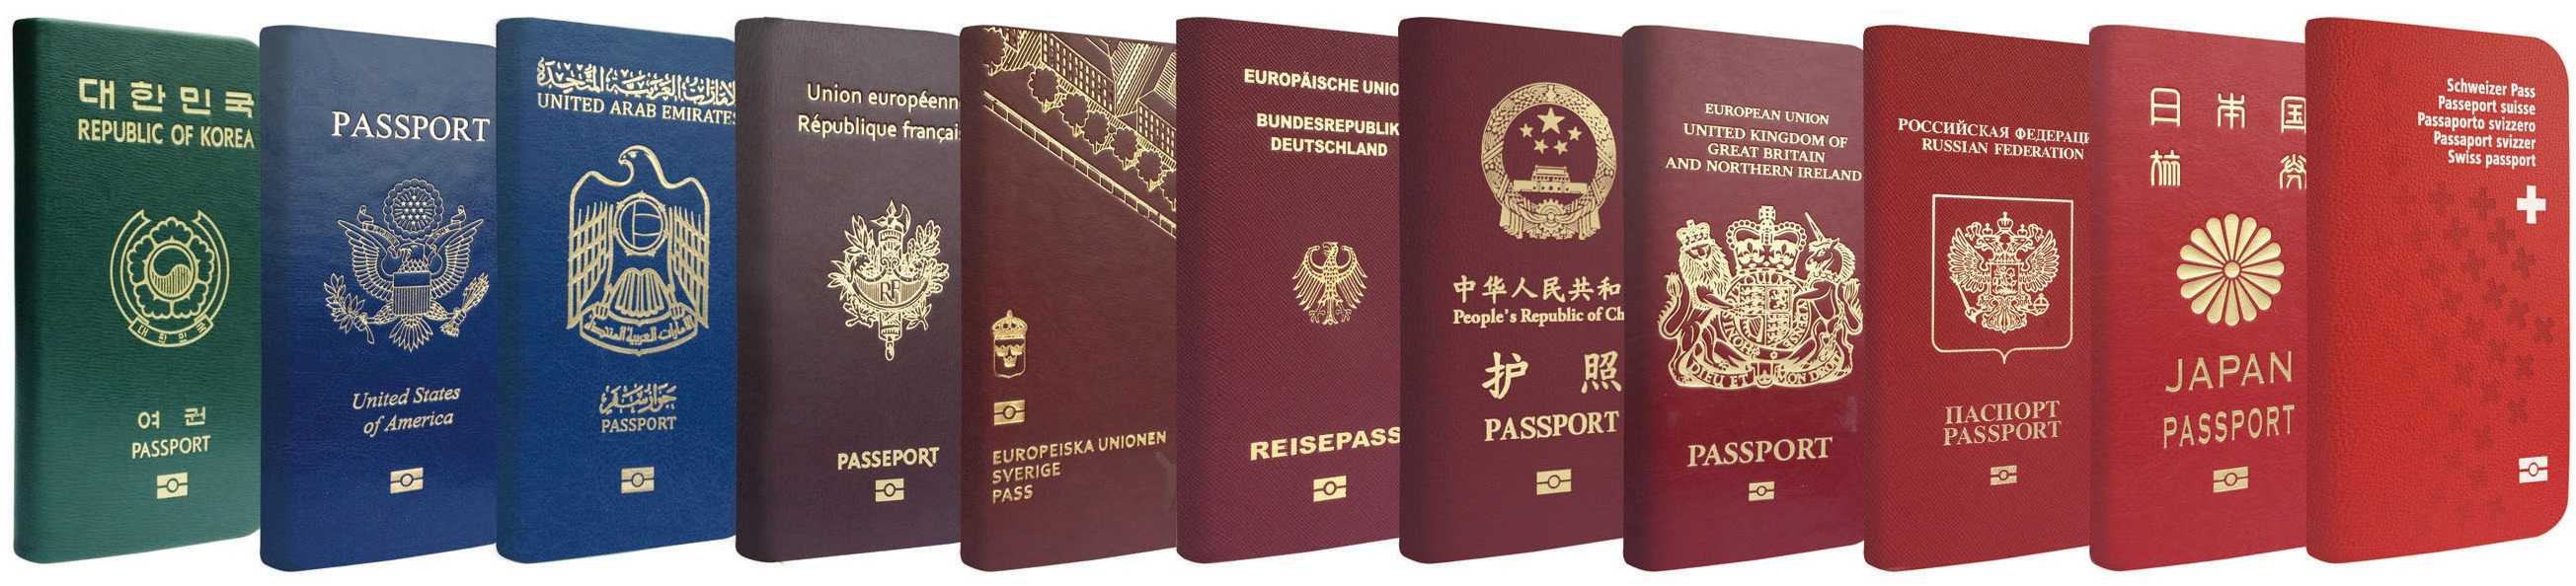 Что значит цвет паспорта?